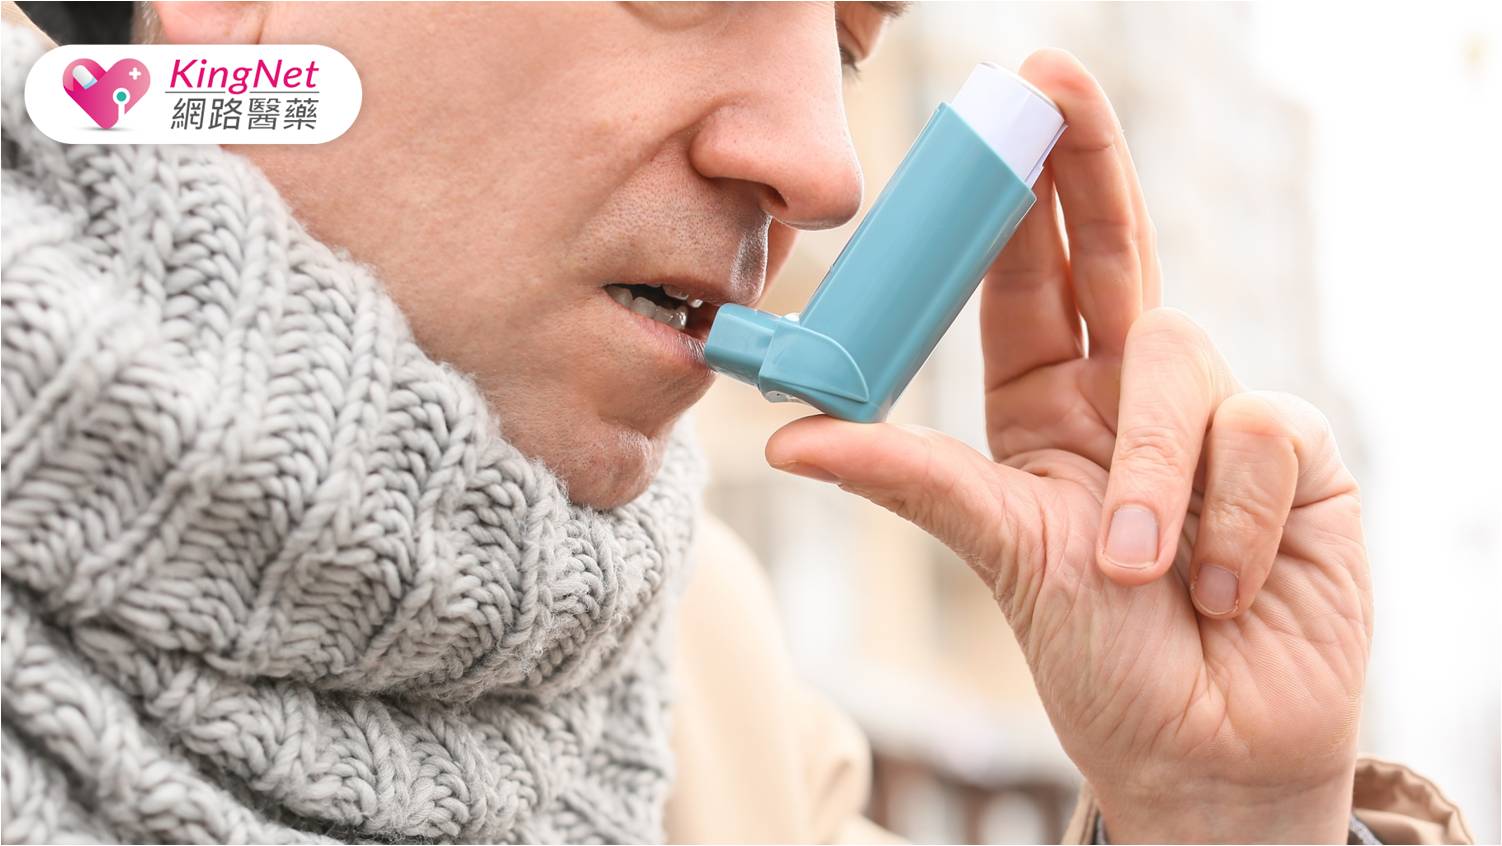 氣喘相當常見，只要配合醫師、自我照護，也能正常生活